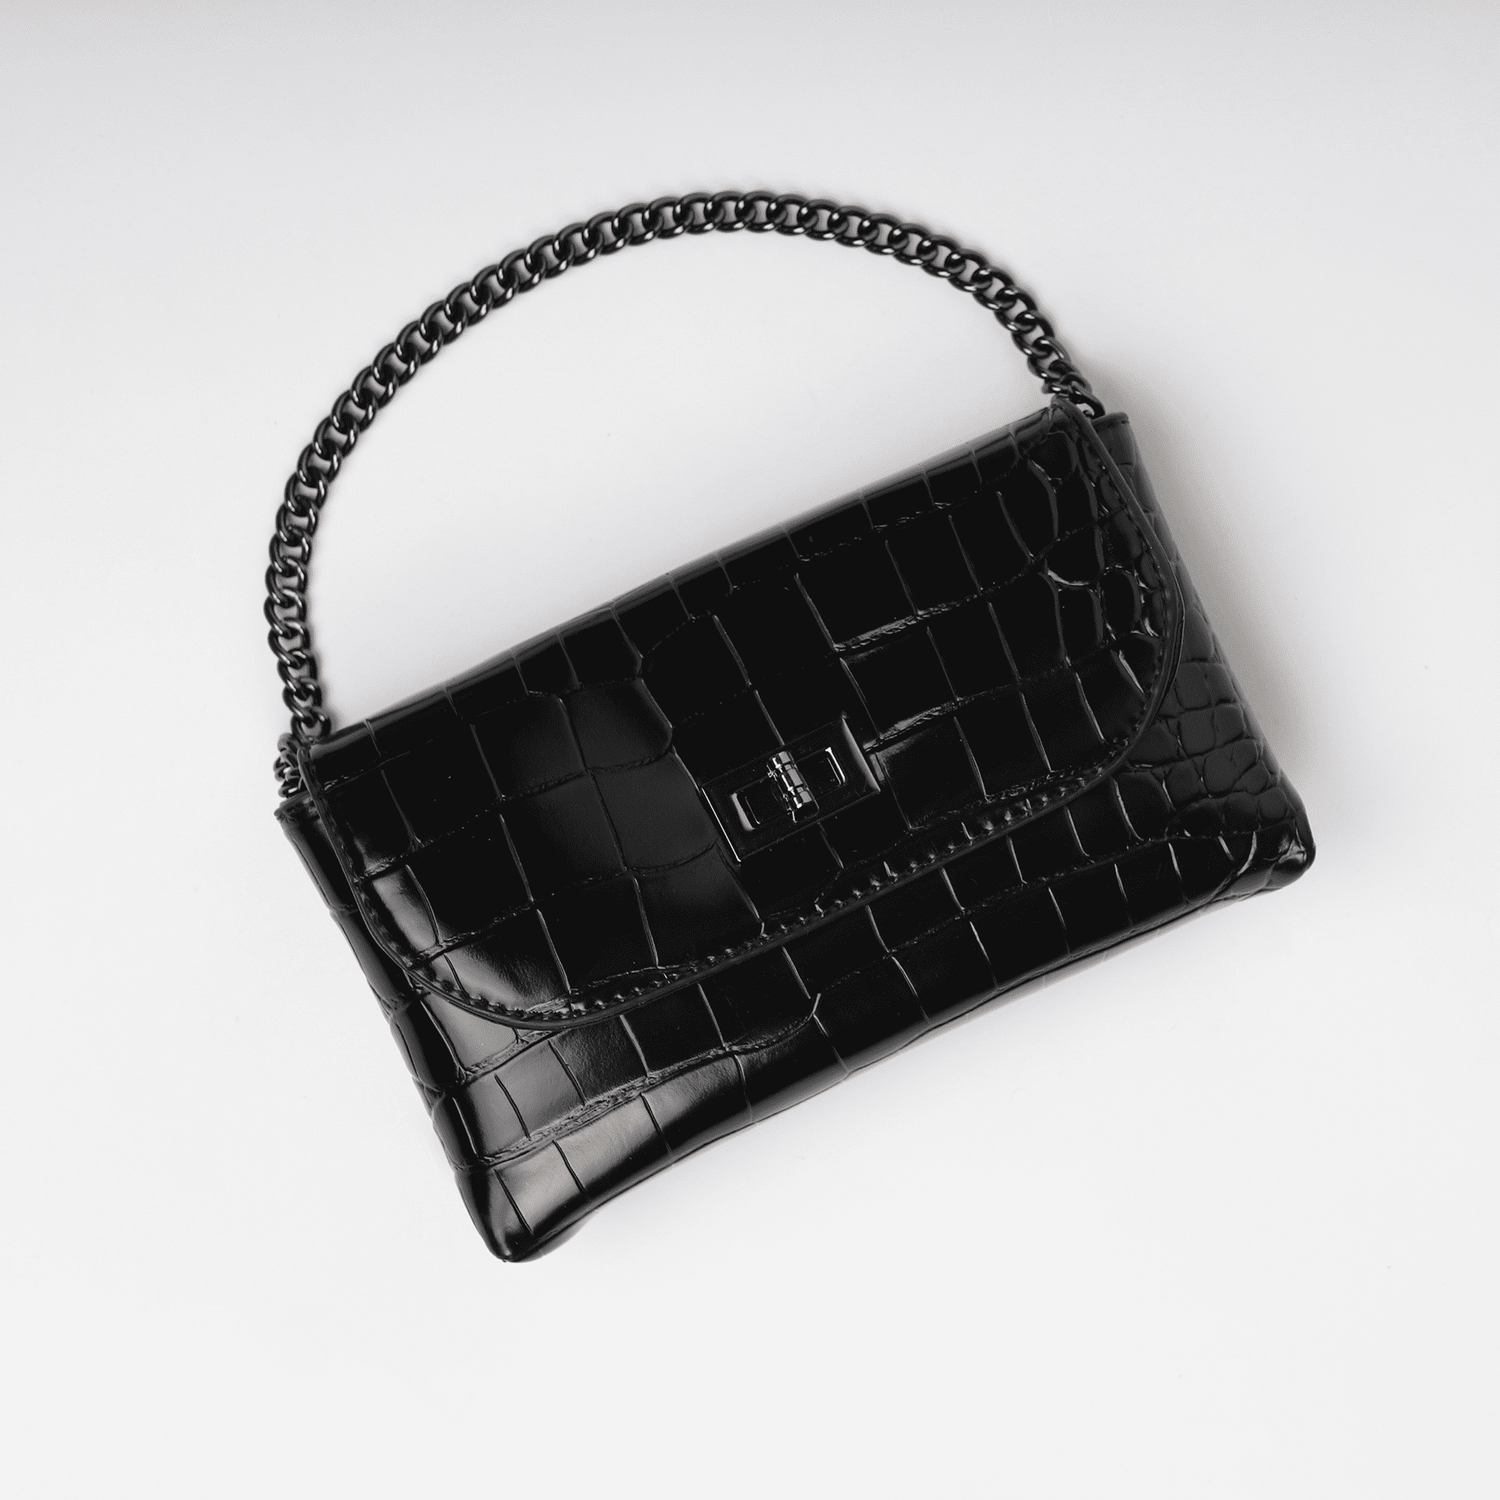 Fendi Black Leather Small Kan U Handbag